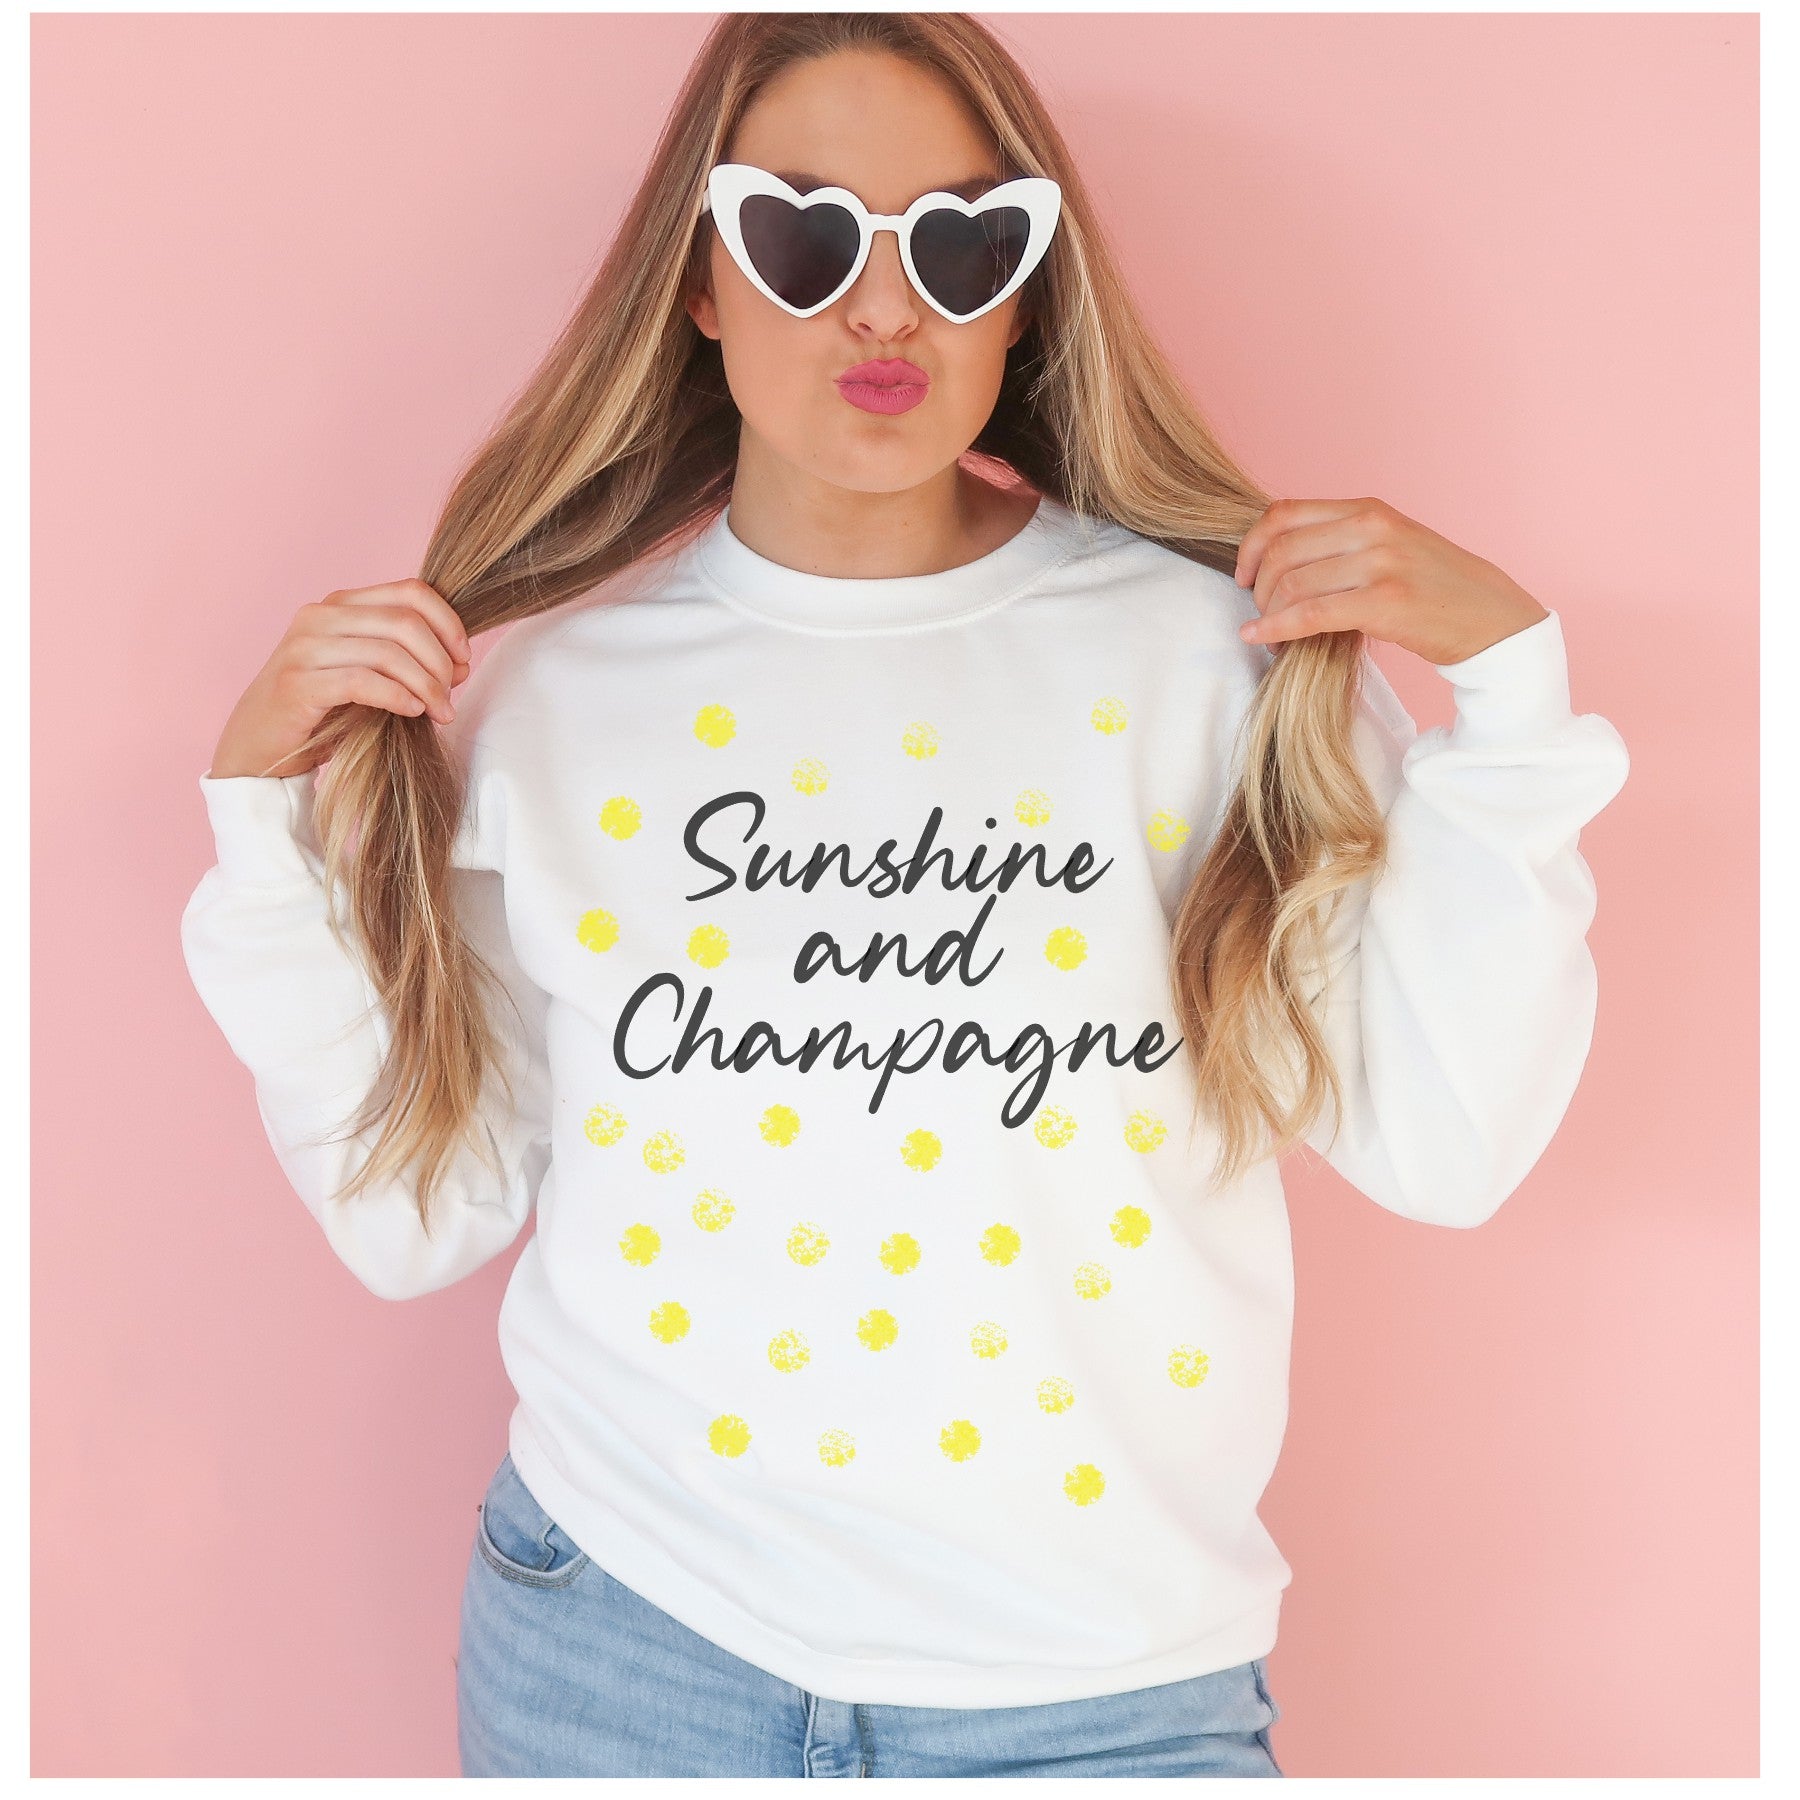 Sunshine and Champagne Sweatshirt